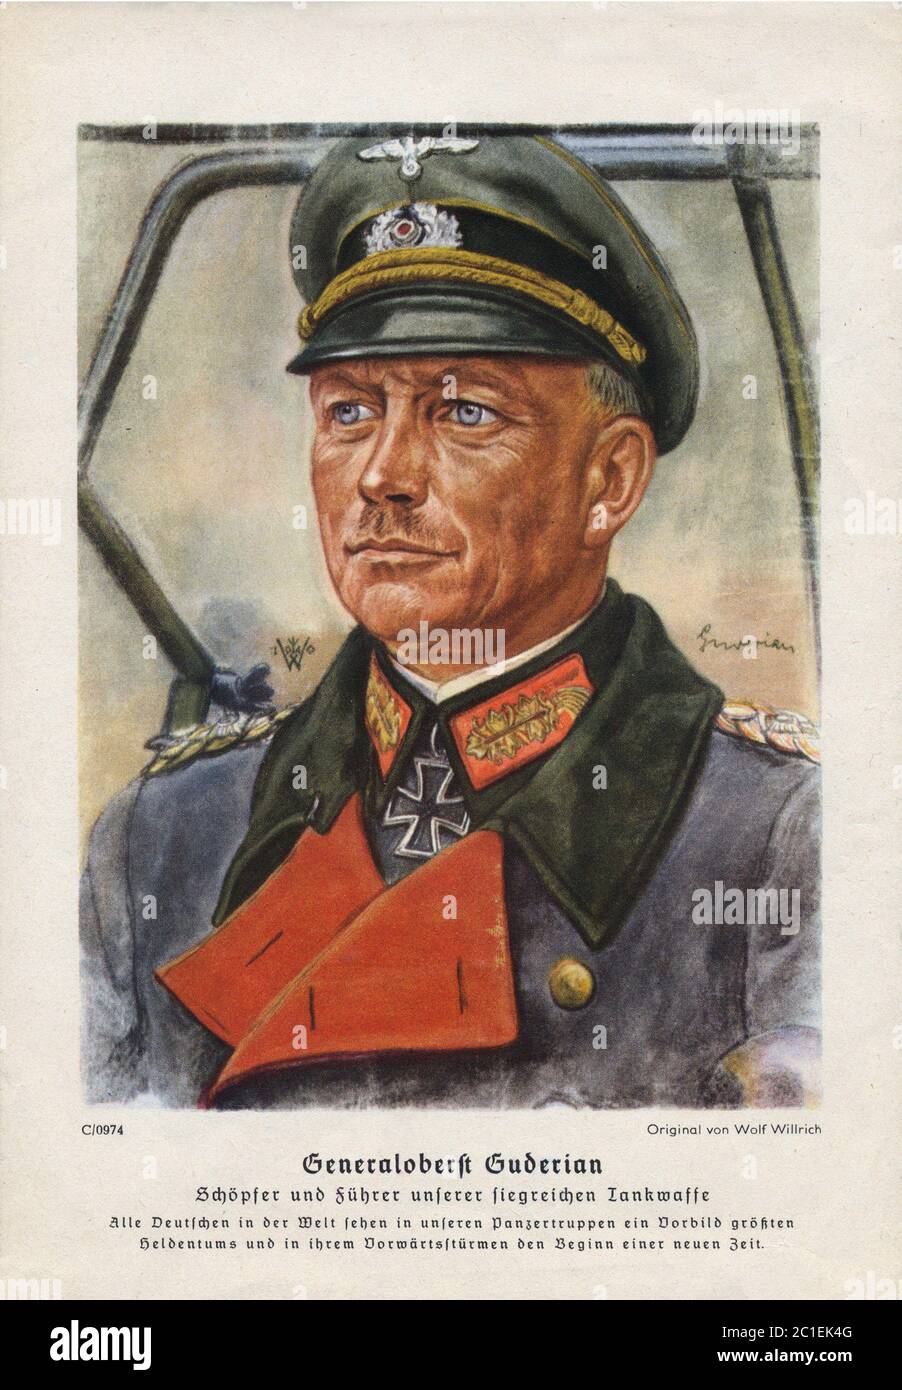 Heinz Wilhelm Guderian (1888 – 1954) fue un general alemán durante la Segunda Guerra Mundial que, después de la guerra, se convirtió en un exitoso memoirista. Un pionero temprano y. Foto de stock